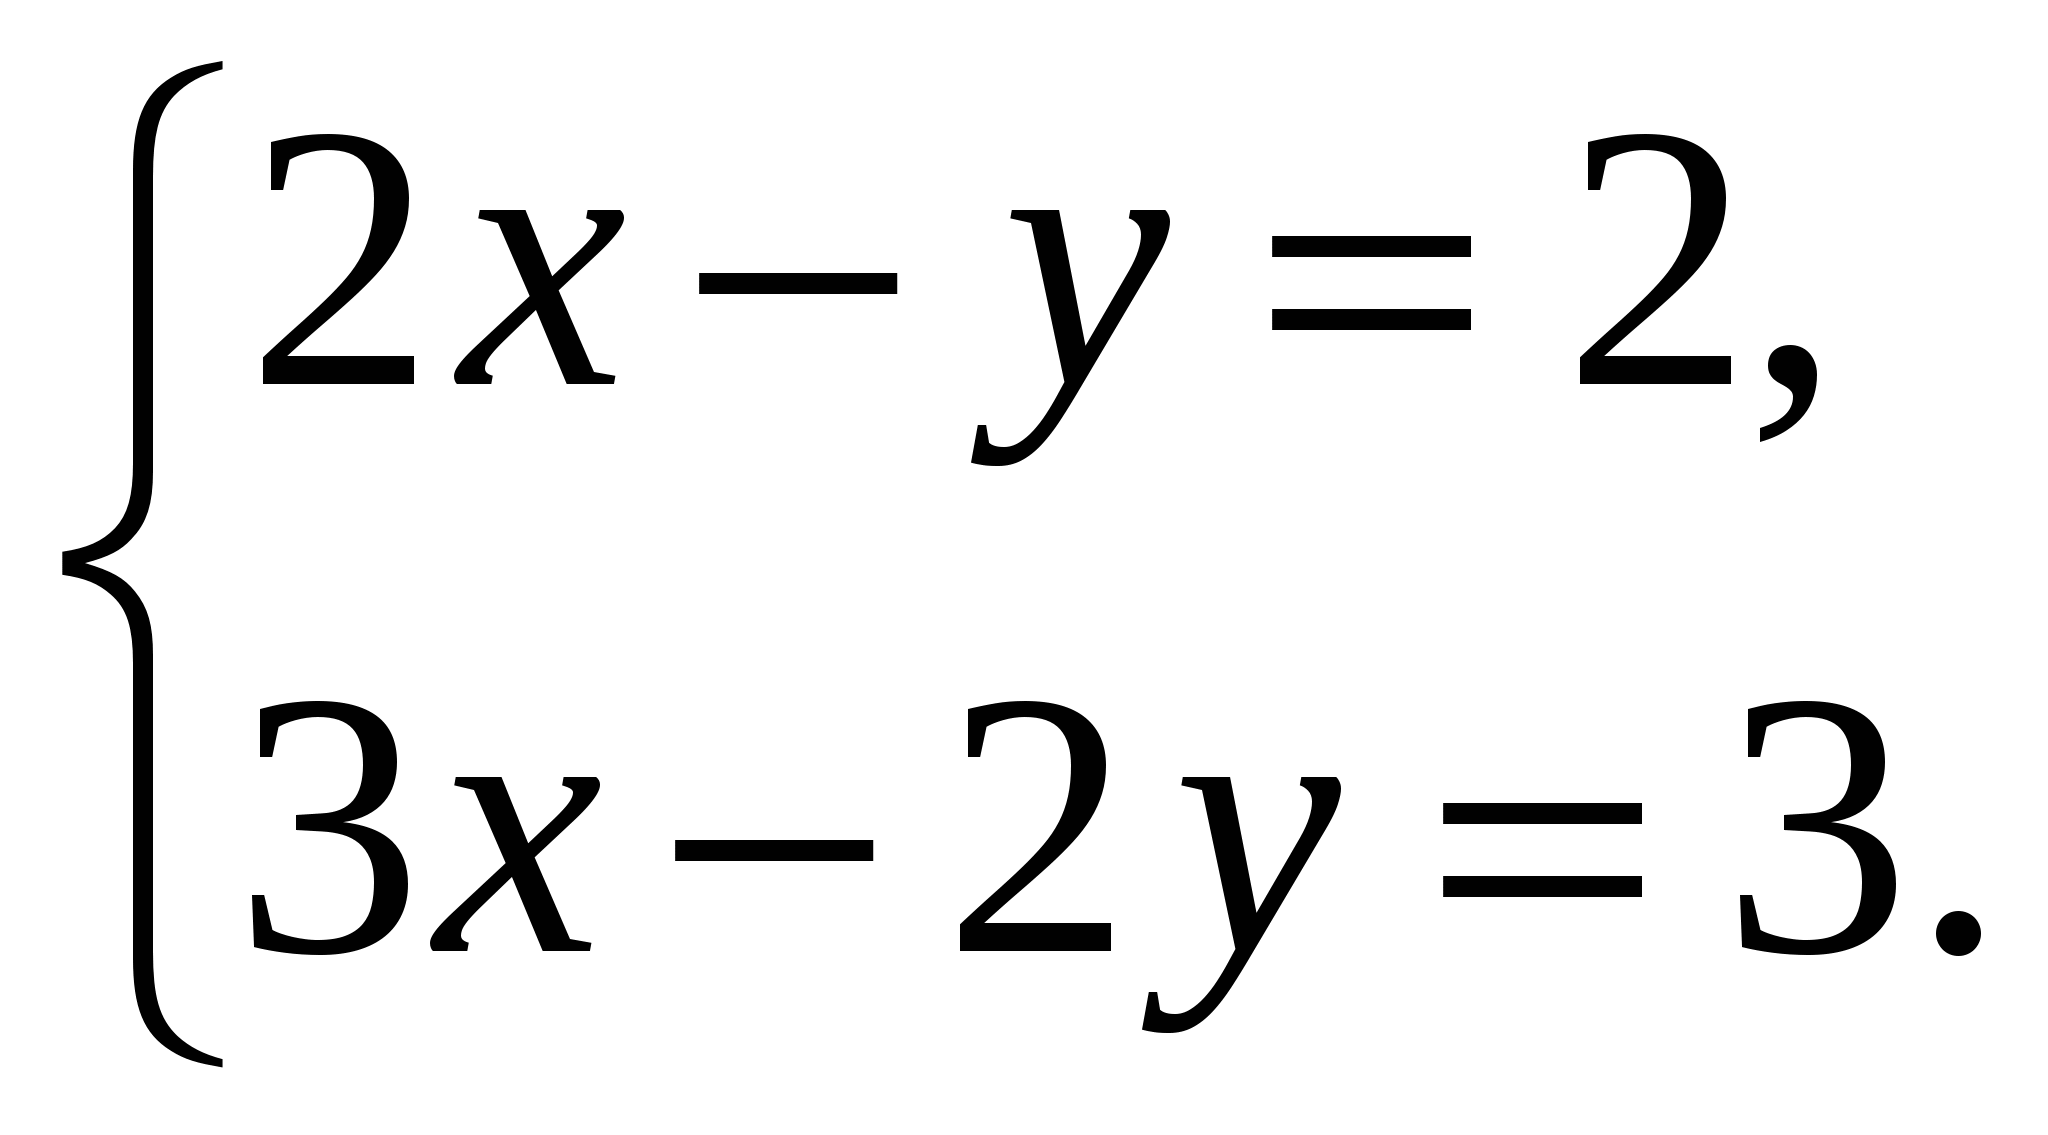 Способ подстановки самостоятельная работа 7 класс. Системы уравнений с 2 переменными 7 класс. Системы линейных уравнений с двумя переменными 7 класс. Системы линейных уравнений с двумя переменными 7 класс сложные. Уравнения с 2 переменными 7 класс.